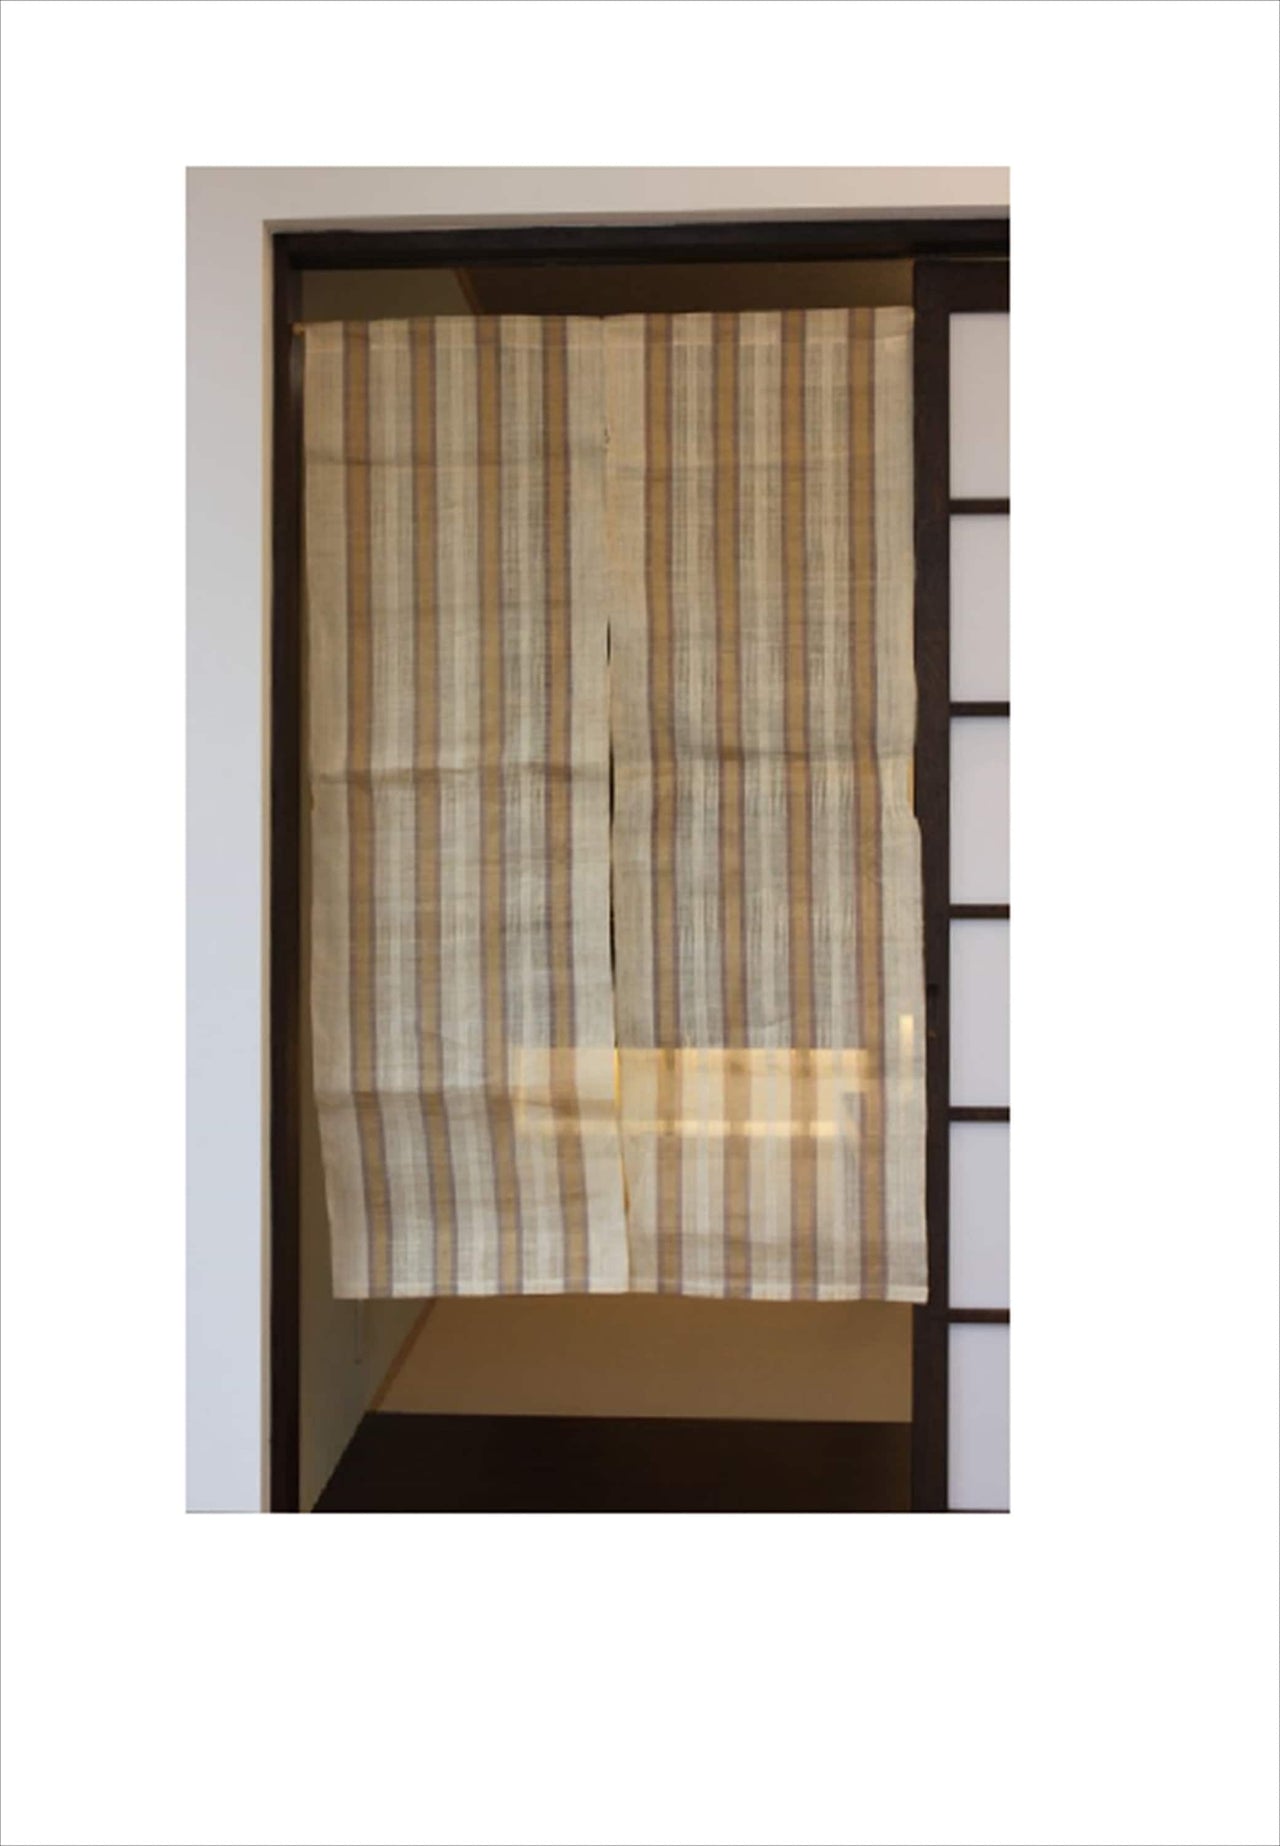 100％ Linen Hemp Japanese art Modern tapestry 90×150cm Noren door curtain Wall hanging